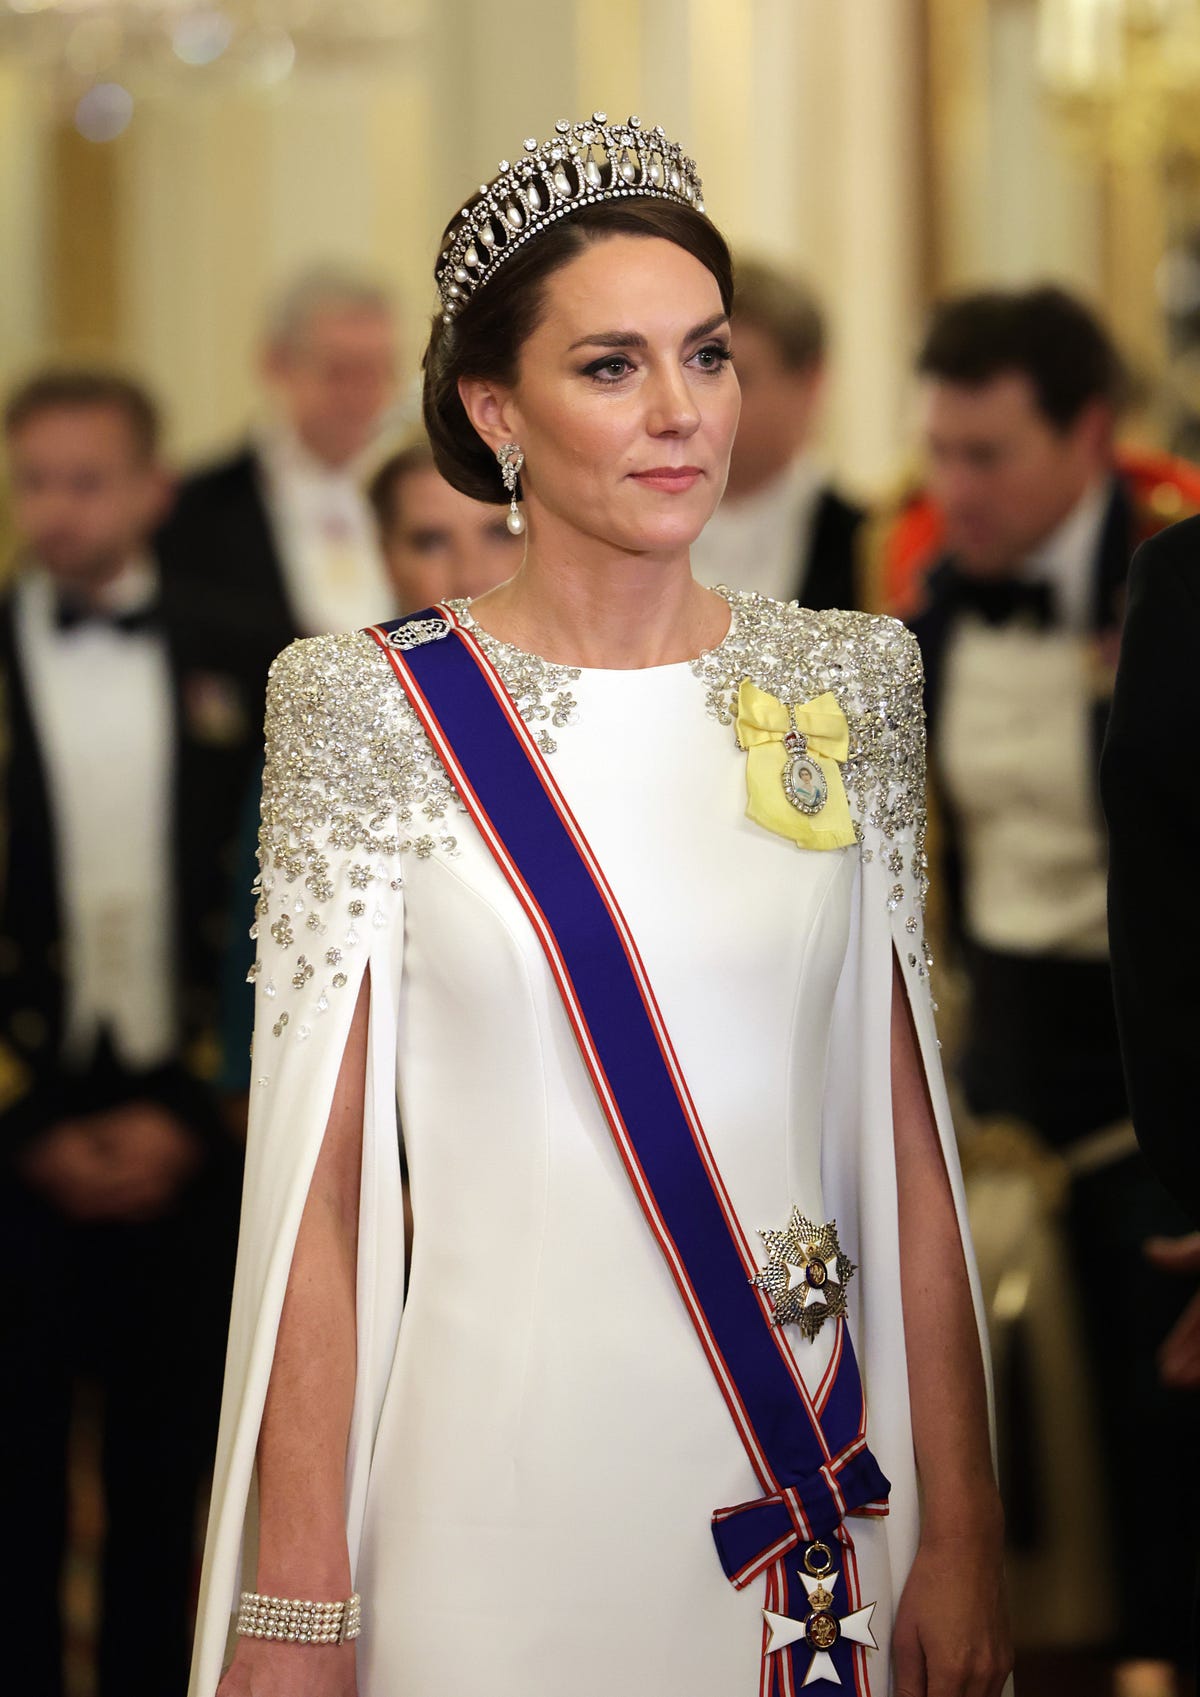 Principessa Kate Middleton tiara negata all'incoronazione di re Carlo